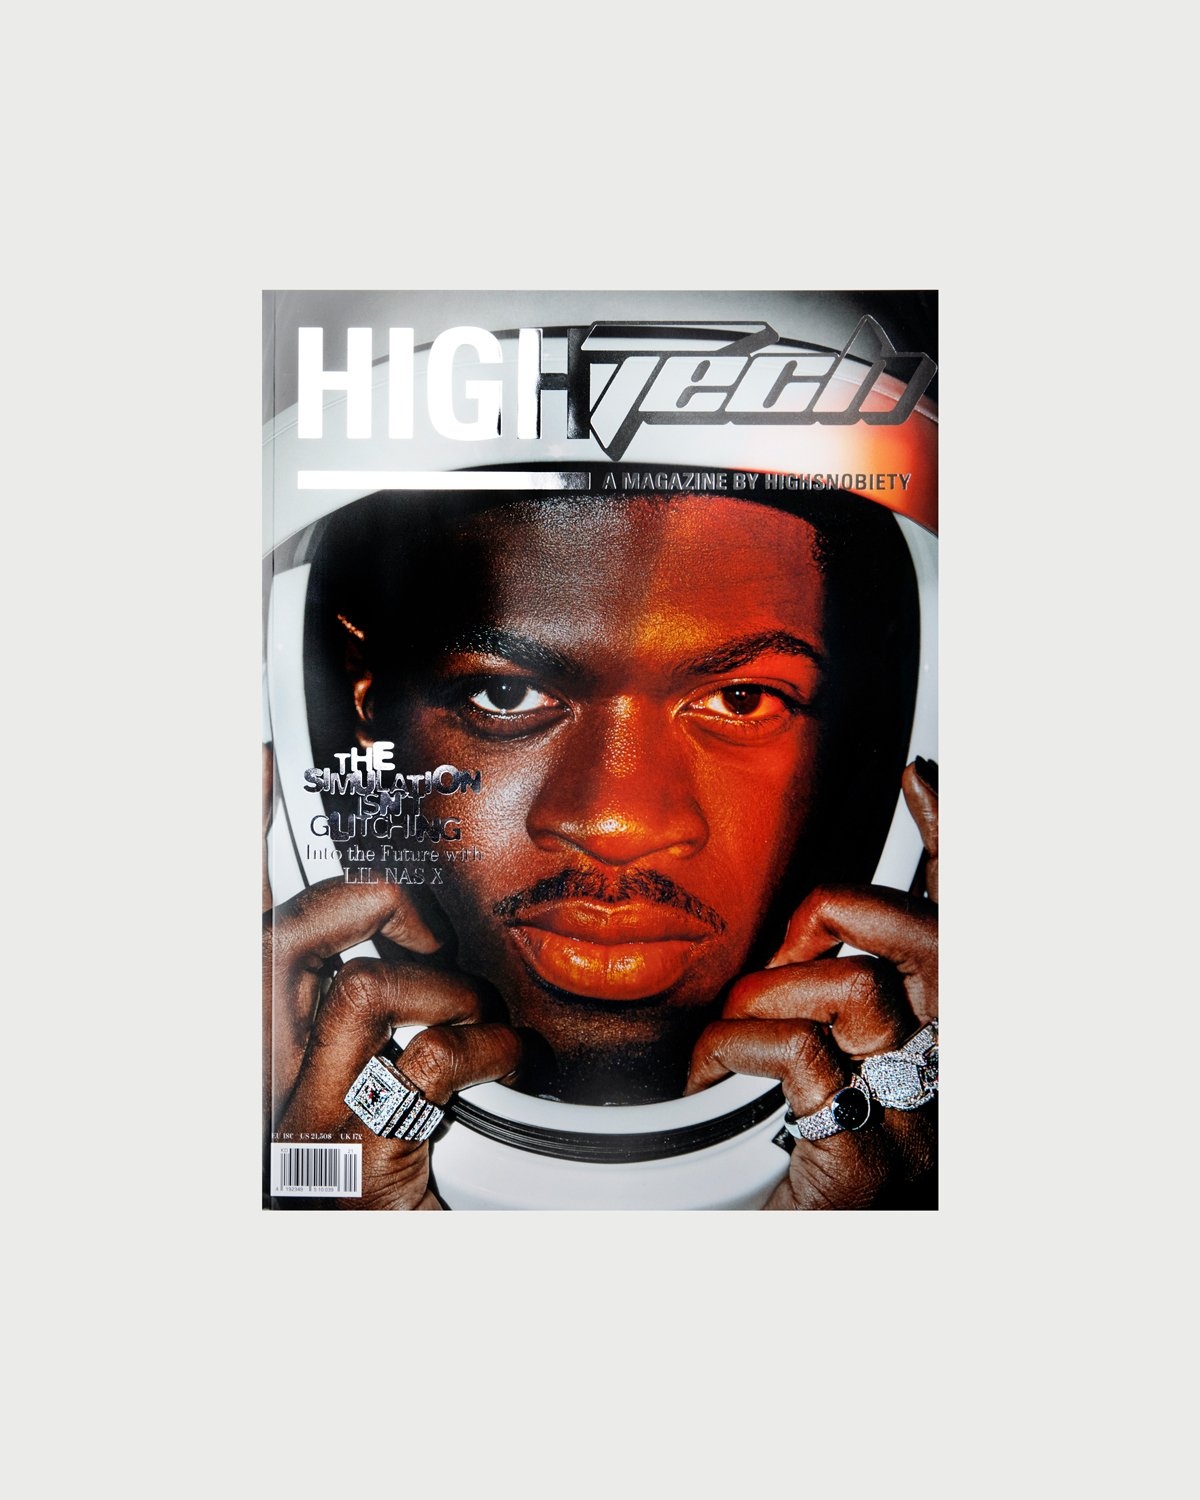 Highsnobiety – HIGHTech - A Magazine by Highsnobiety - Magazines - Image 1